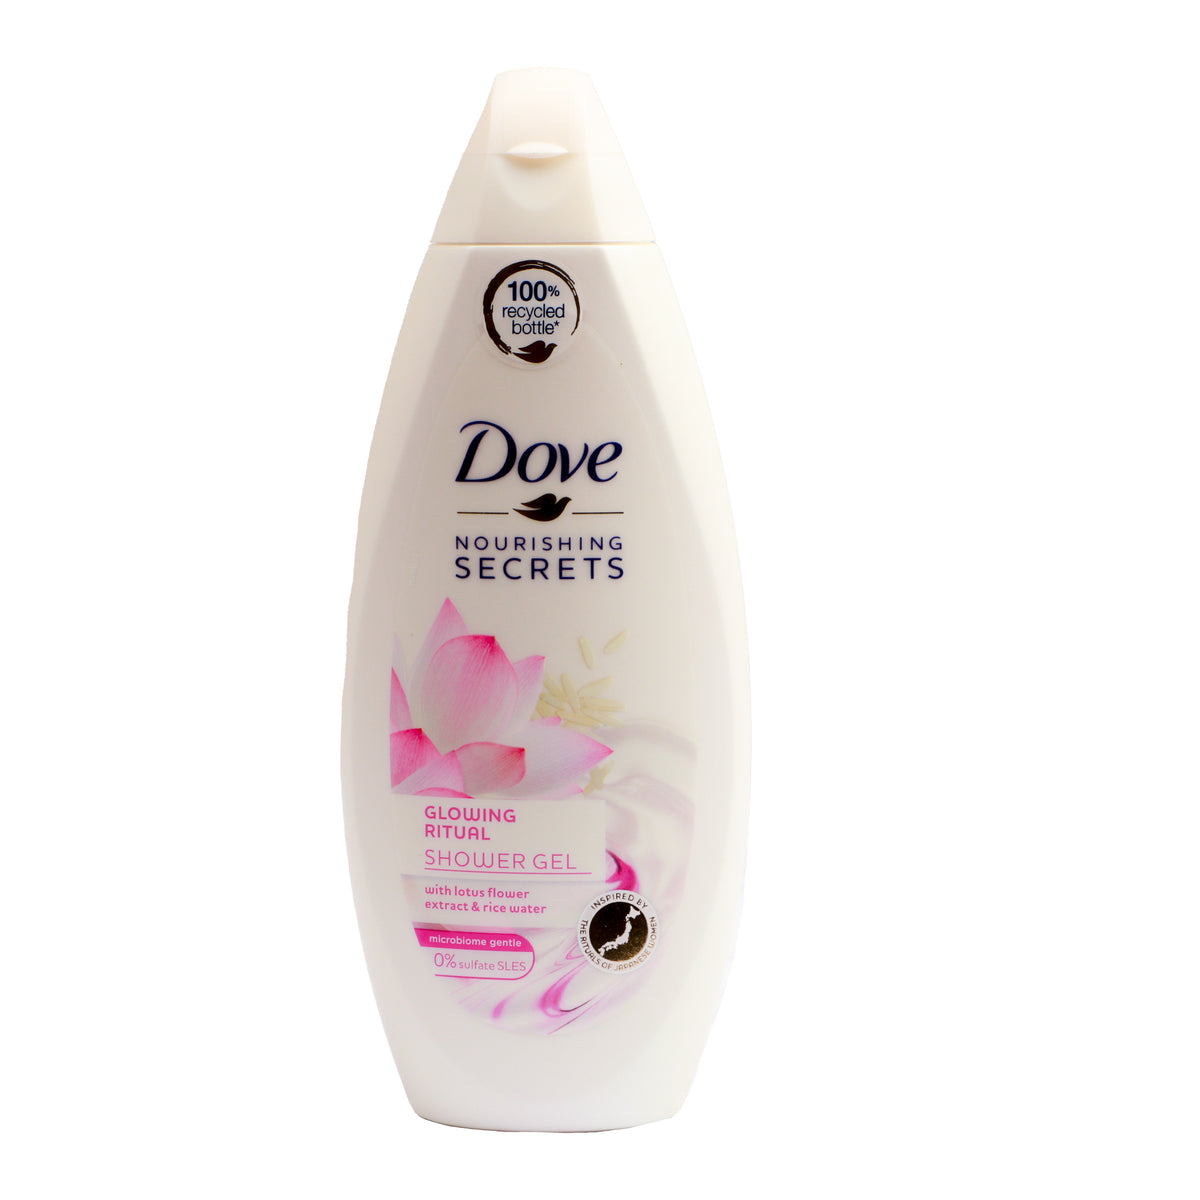 Dove Nourishing Secrets Glowing Ritual Shower Gel 250Ml